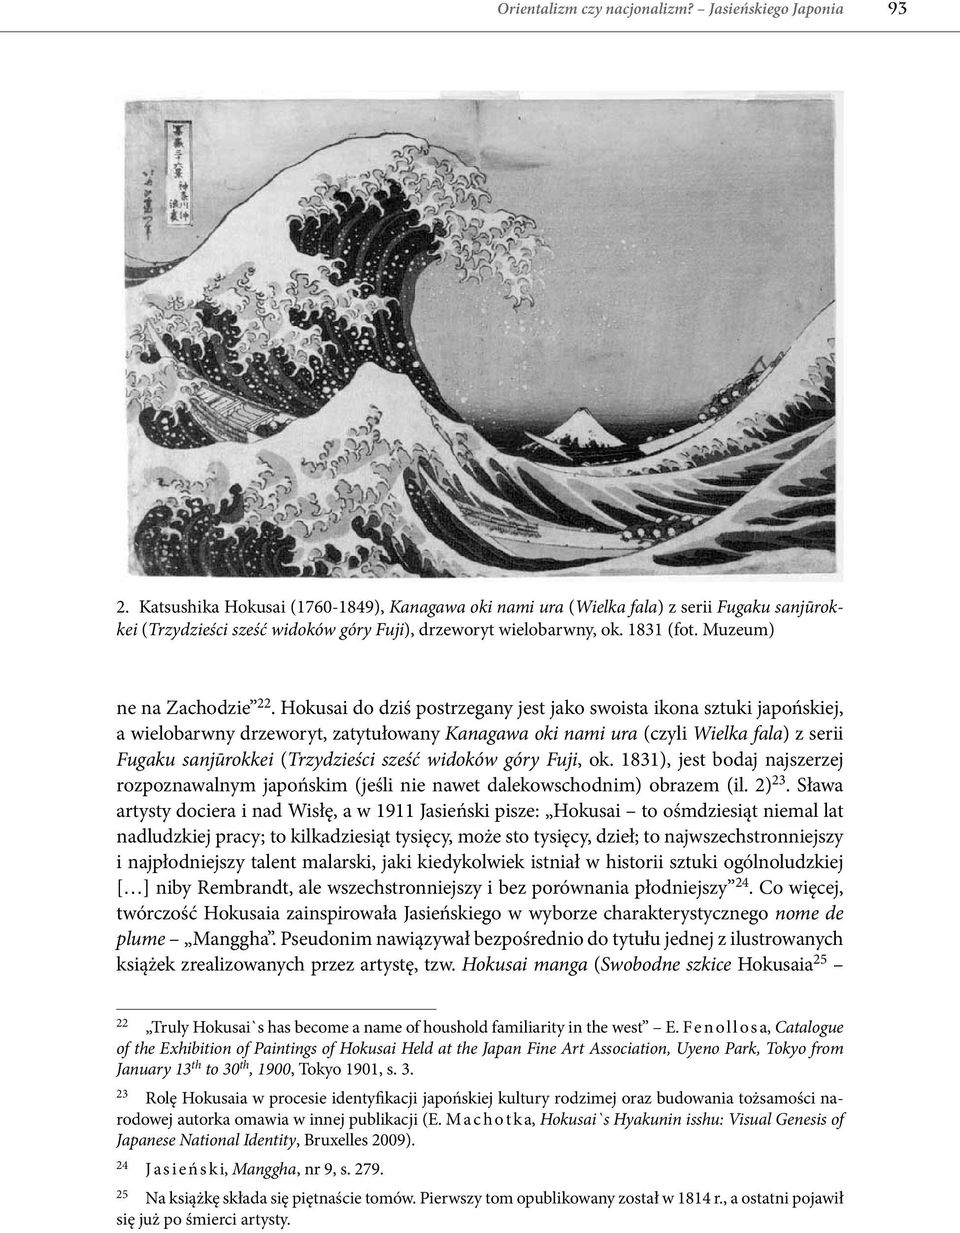 Hokusai do dziś postrzegany jest jako swoista ikona sztuki japońskiej, a wielobarwny drzeworyt, zatytułowany Kanagawa oki nami ura (czyli Wielka fala) z serii Fugaku sanjūrokkei (Trzydzieści sześć